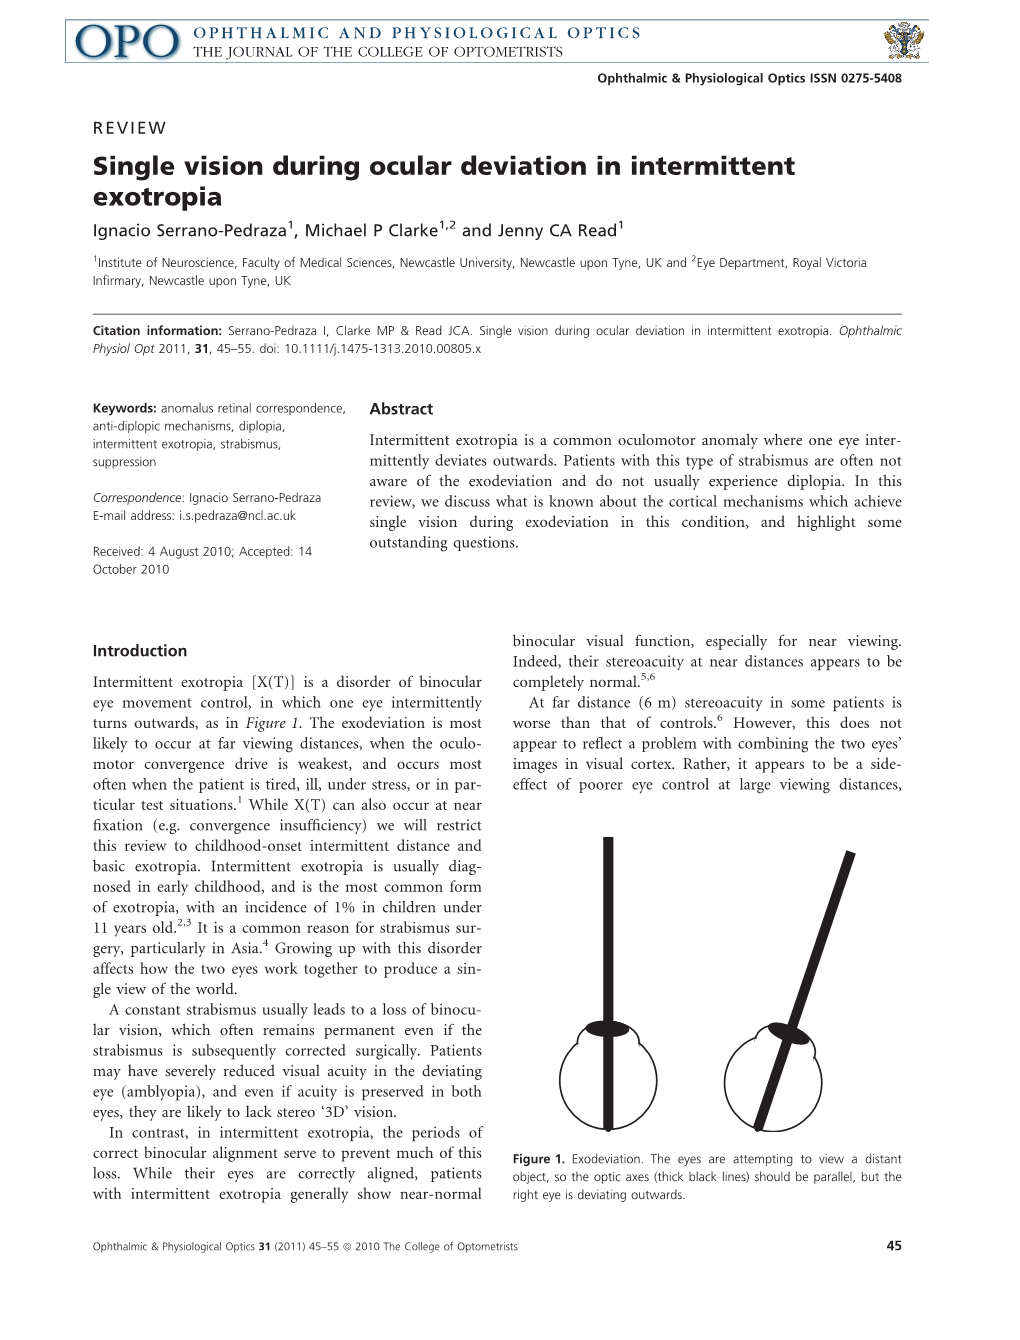 Single Vision During Ocular Deviation in Intermittent Exotropia Ignacio Serrano-Pedraza1, Michael P Clarke1,2 and Jenny CA Read1